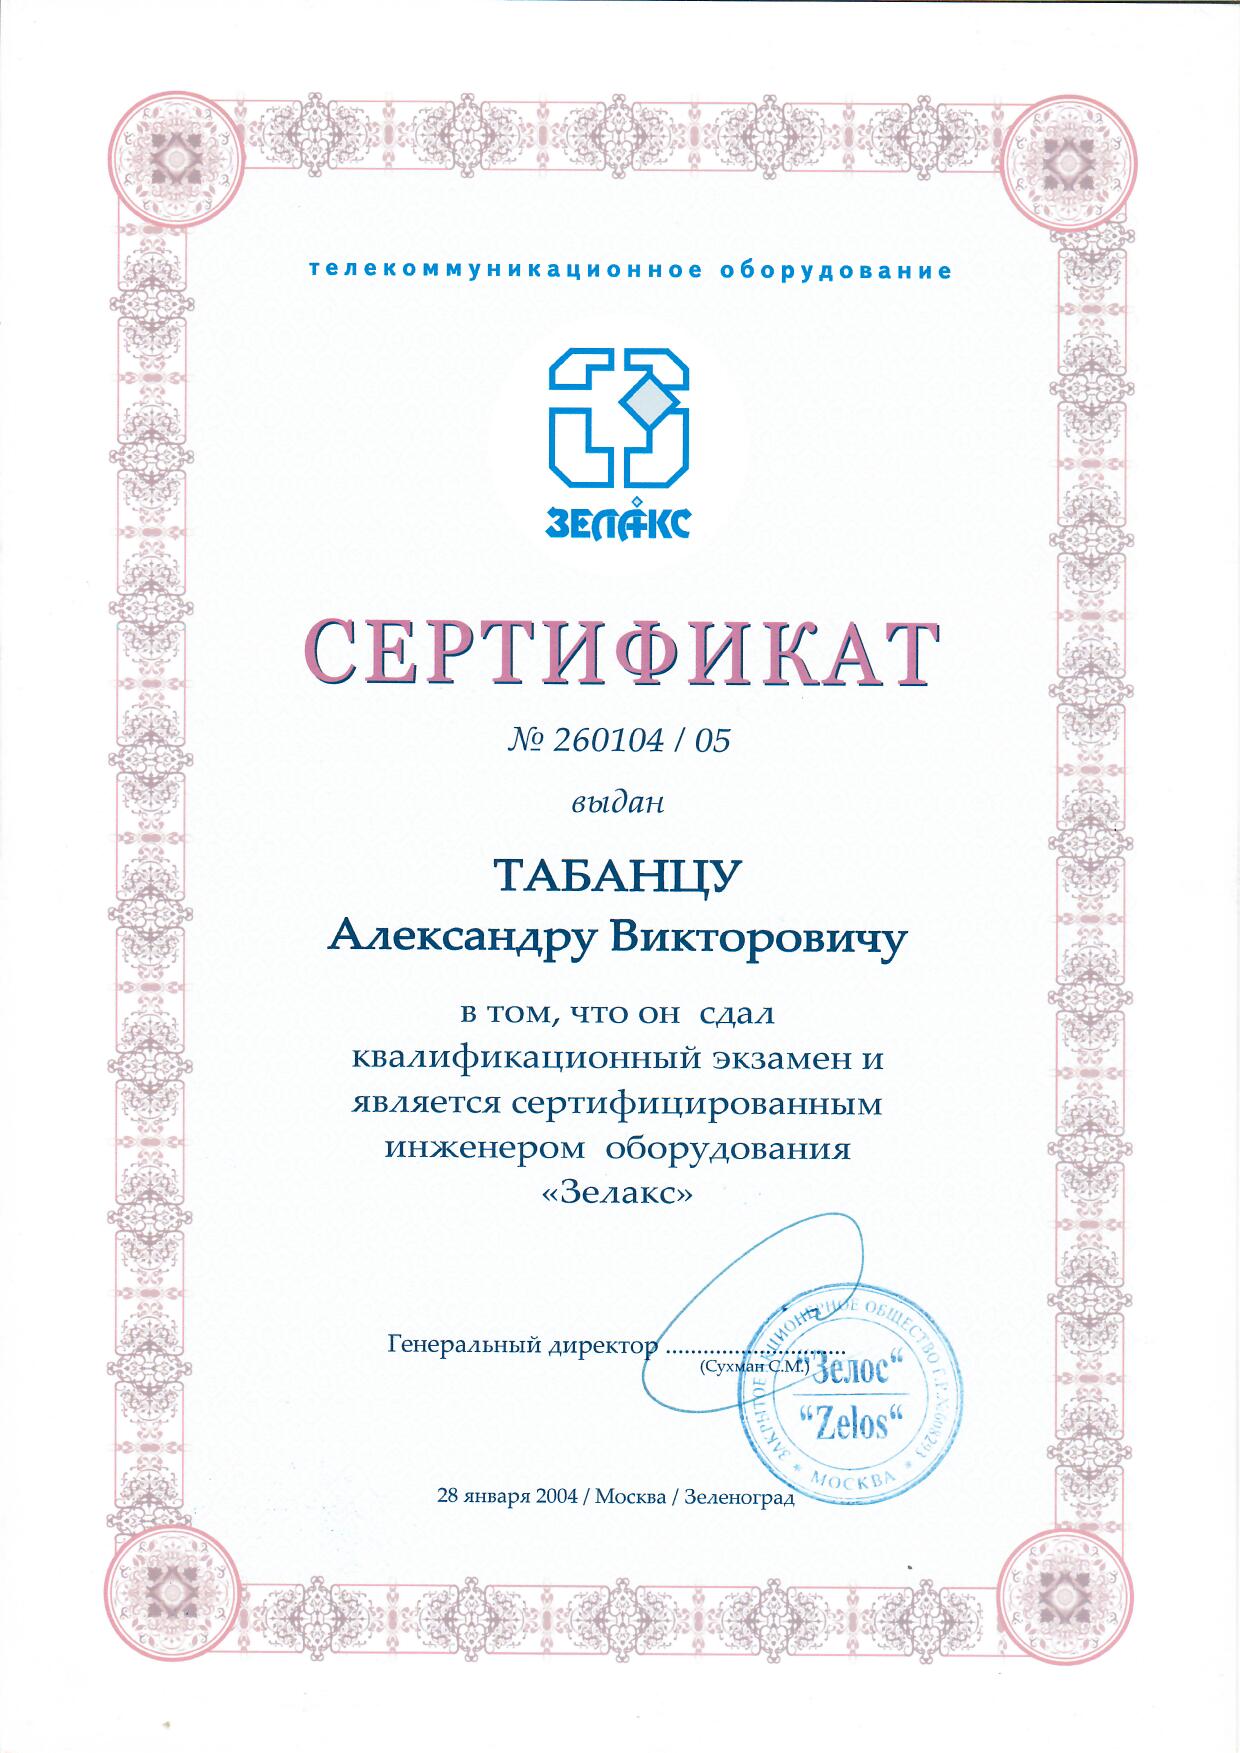 Сертификат сертифицированного инженера Zelax Бикар Плюс